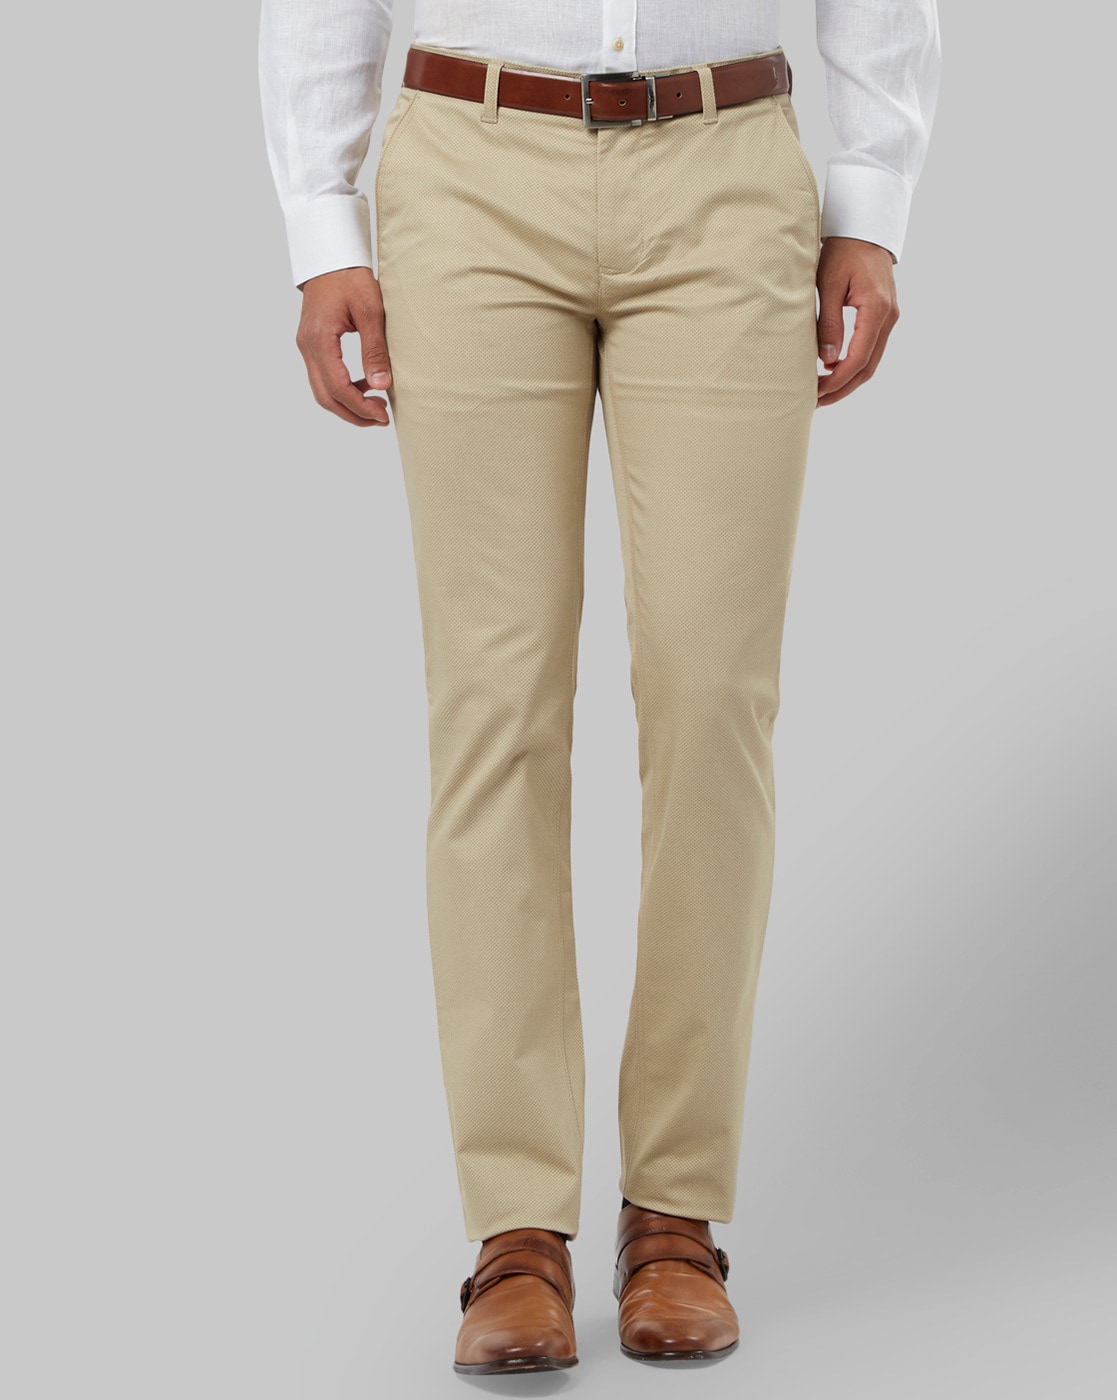 VAN HEUSEN Slim Fit Men Beige Trousers - Buy VAN HEUSEN Slim Fit Men Beige  Trousers Online at Best Prices in India | Flipkart.com